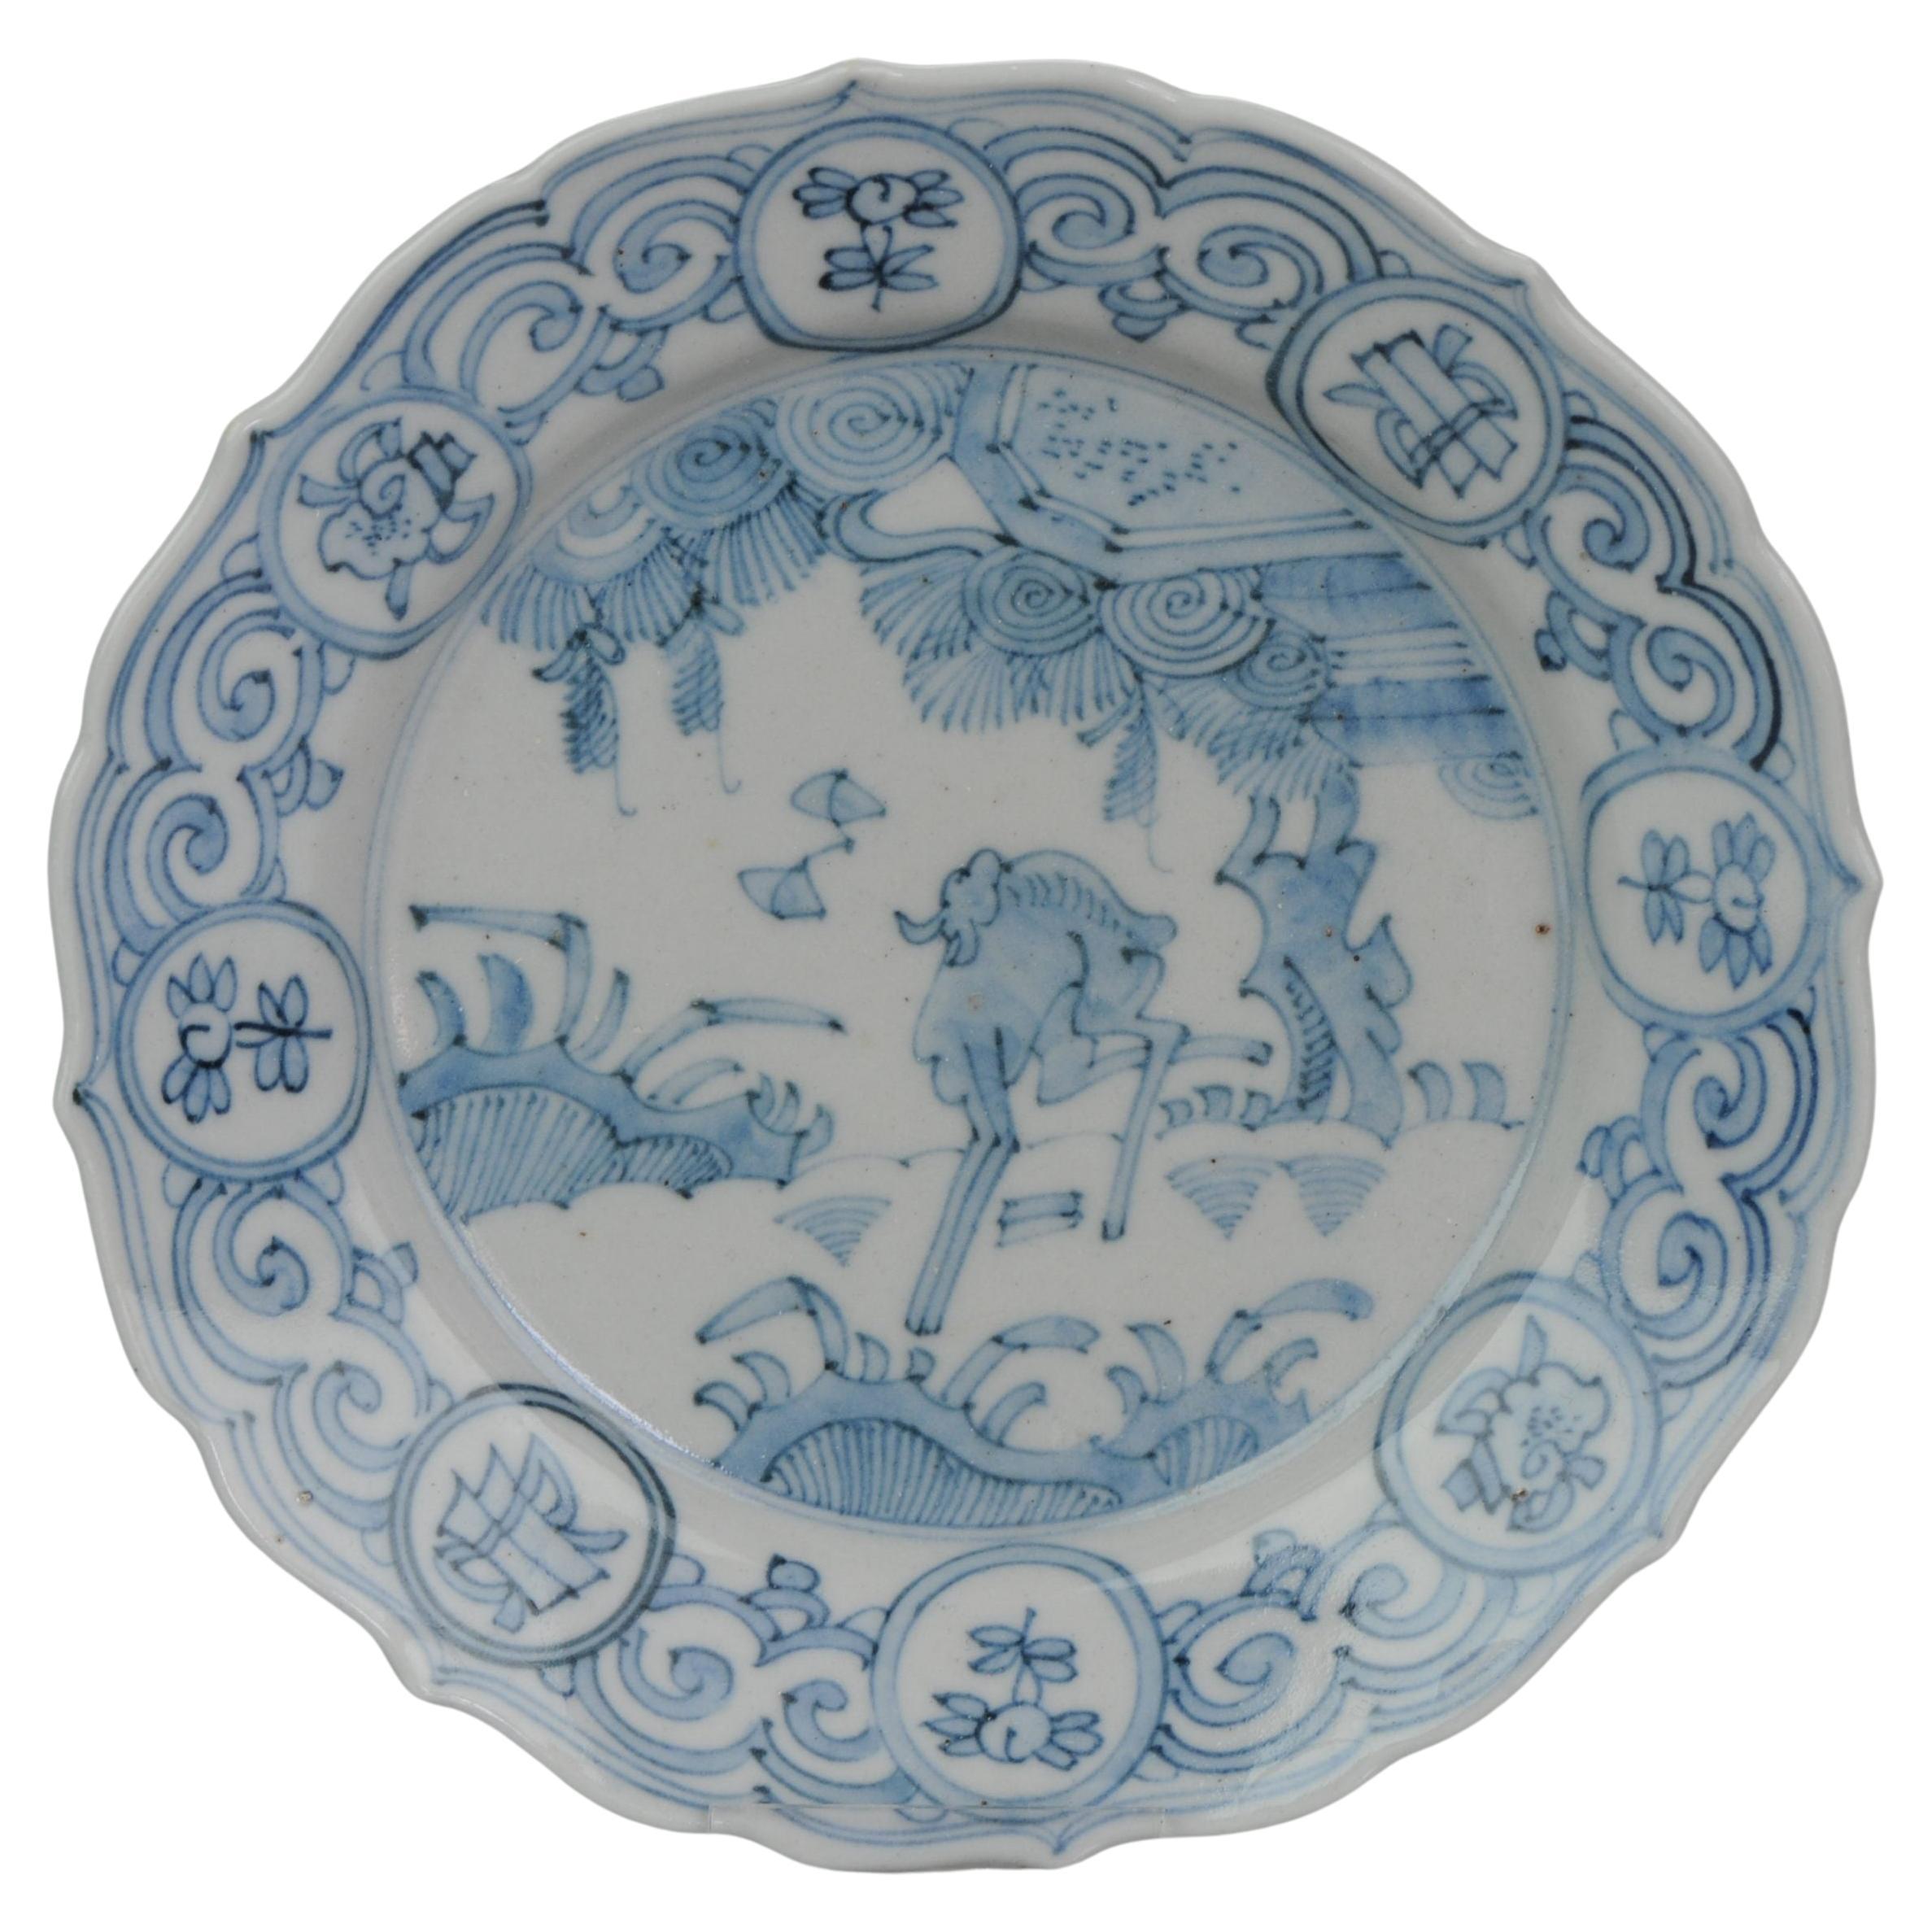 Plat japonais en porcelaine Imari Porcelain de la période Edo Japon antique, 17e siècle